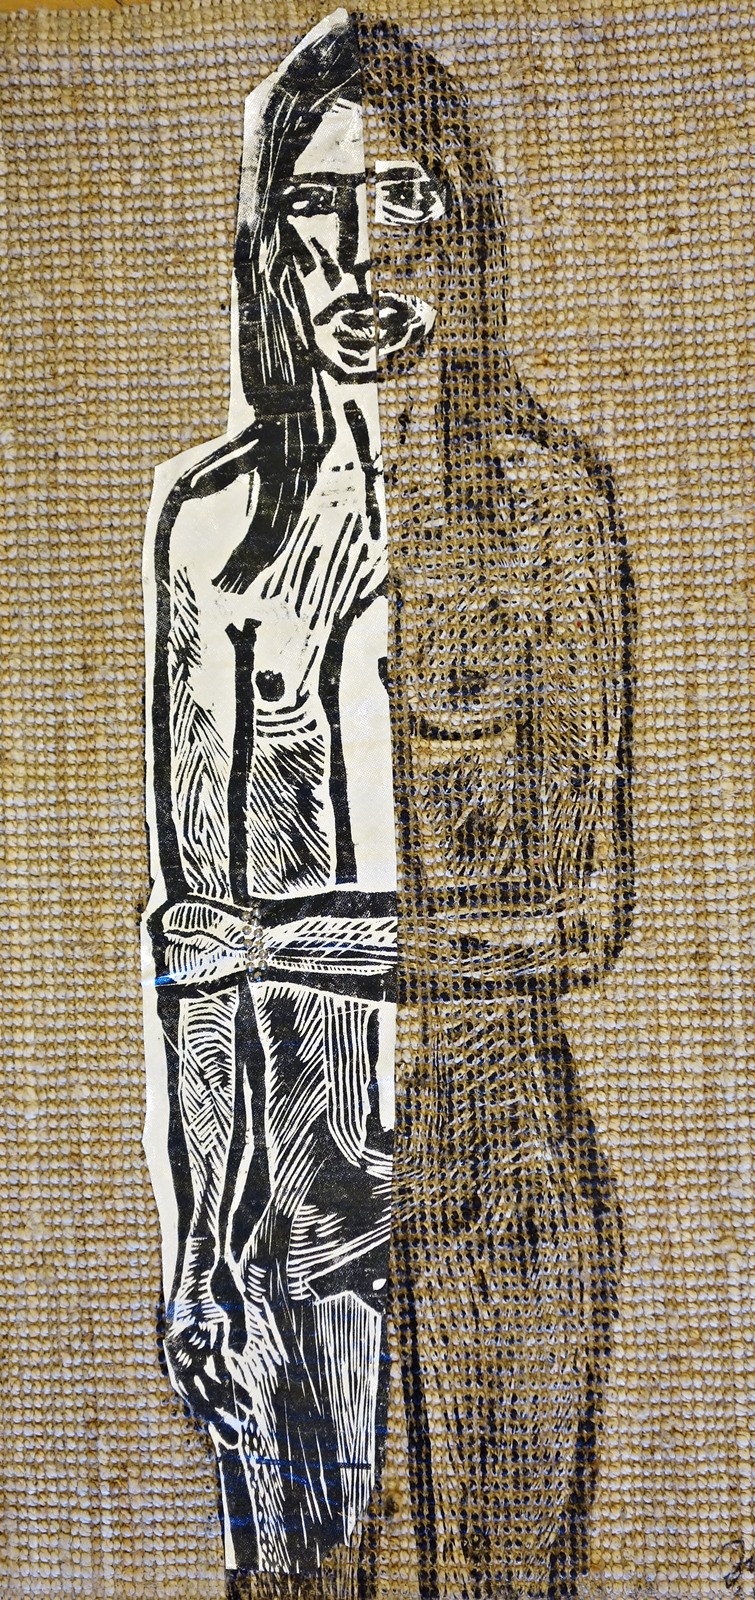 Julia Jarża-Brataniec, 2019, Kobieta 1/2, drzeworyt na tkaninie, 150 × 80 cm (źródło: materiały prasowe)